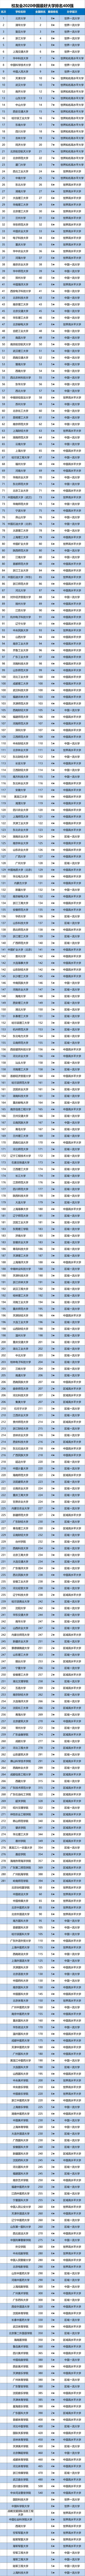 河师大排名2020年206排名_2020中国最好大学排名新鲜公布,武汉大学挺进前